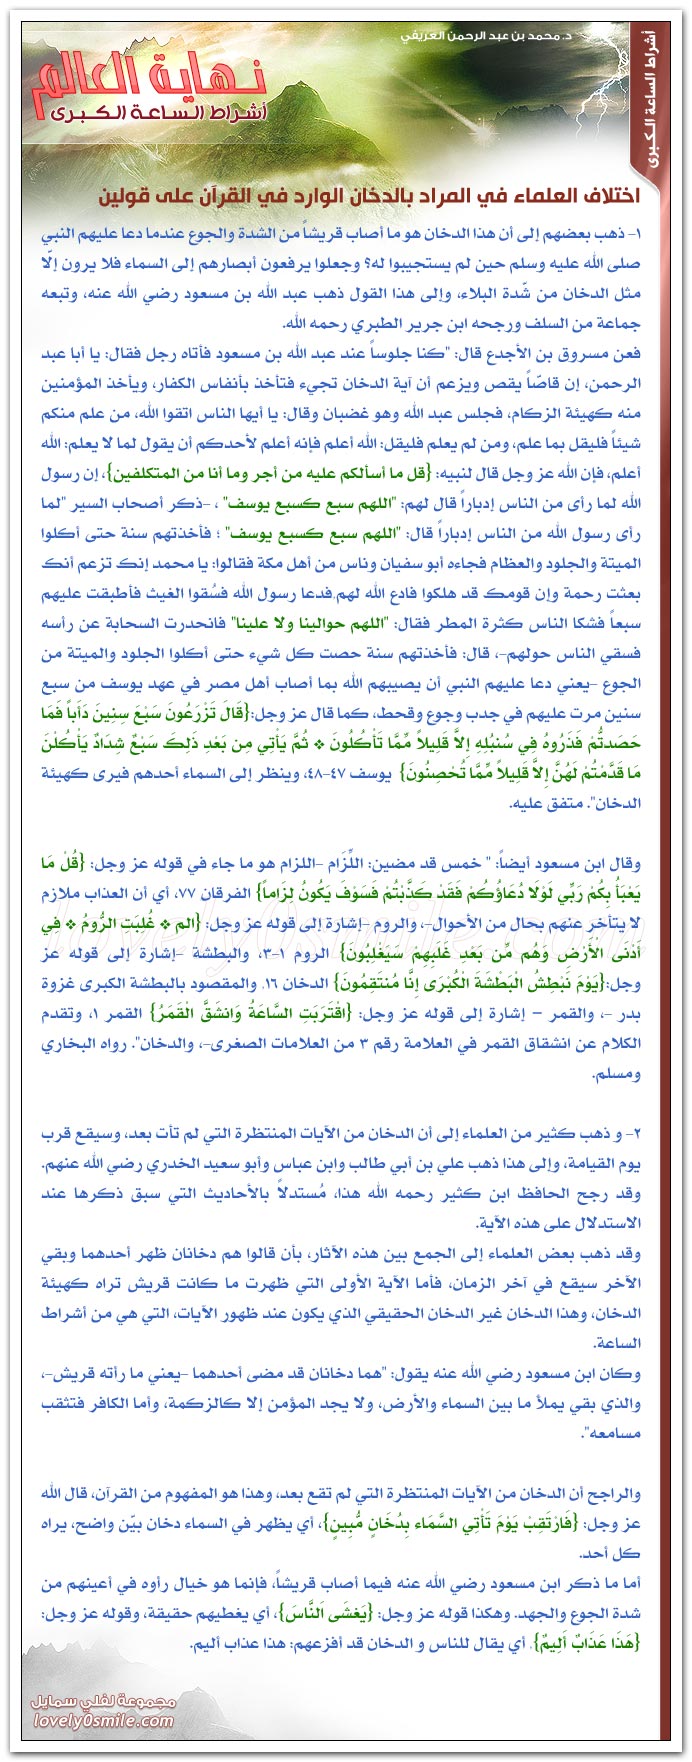 الدخان + اختلاف العلماء في المراد بالدخان الوارد في القرآن على قولين